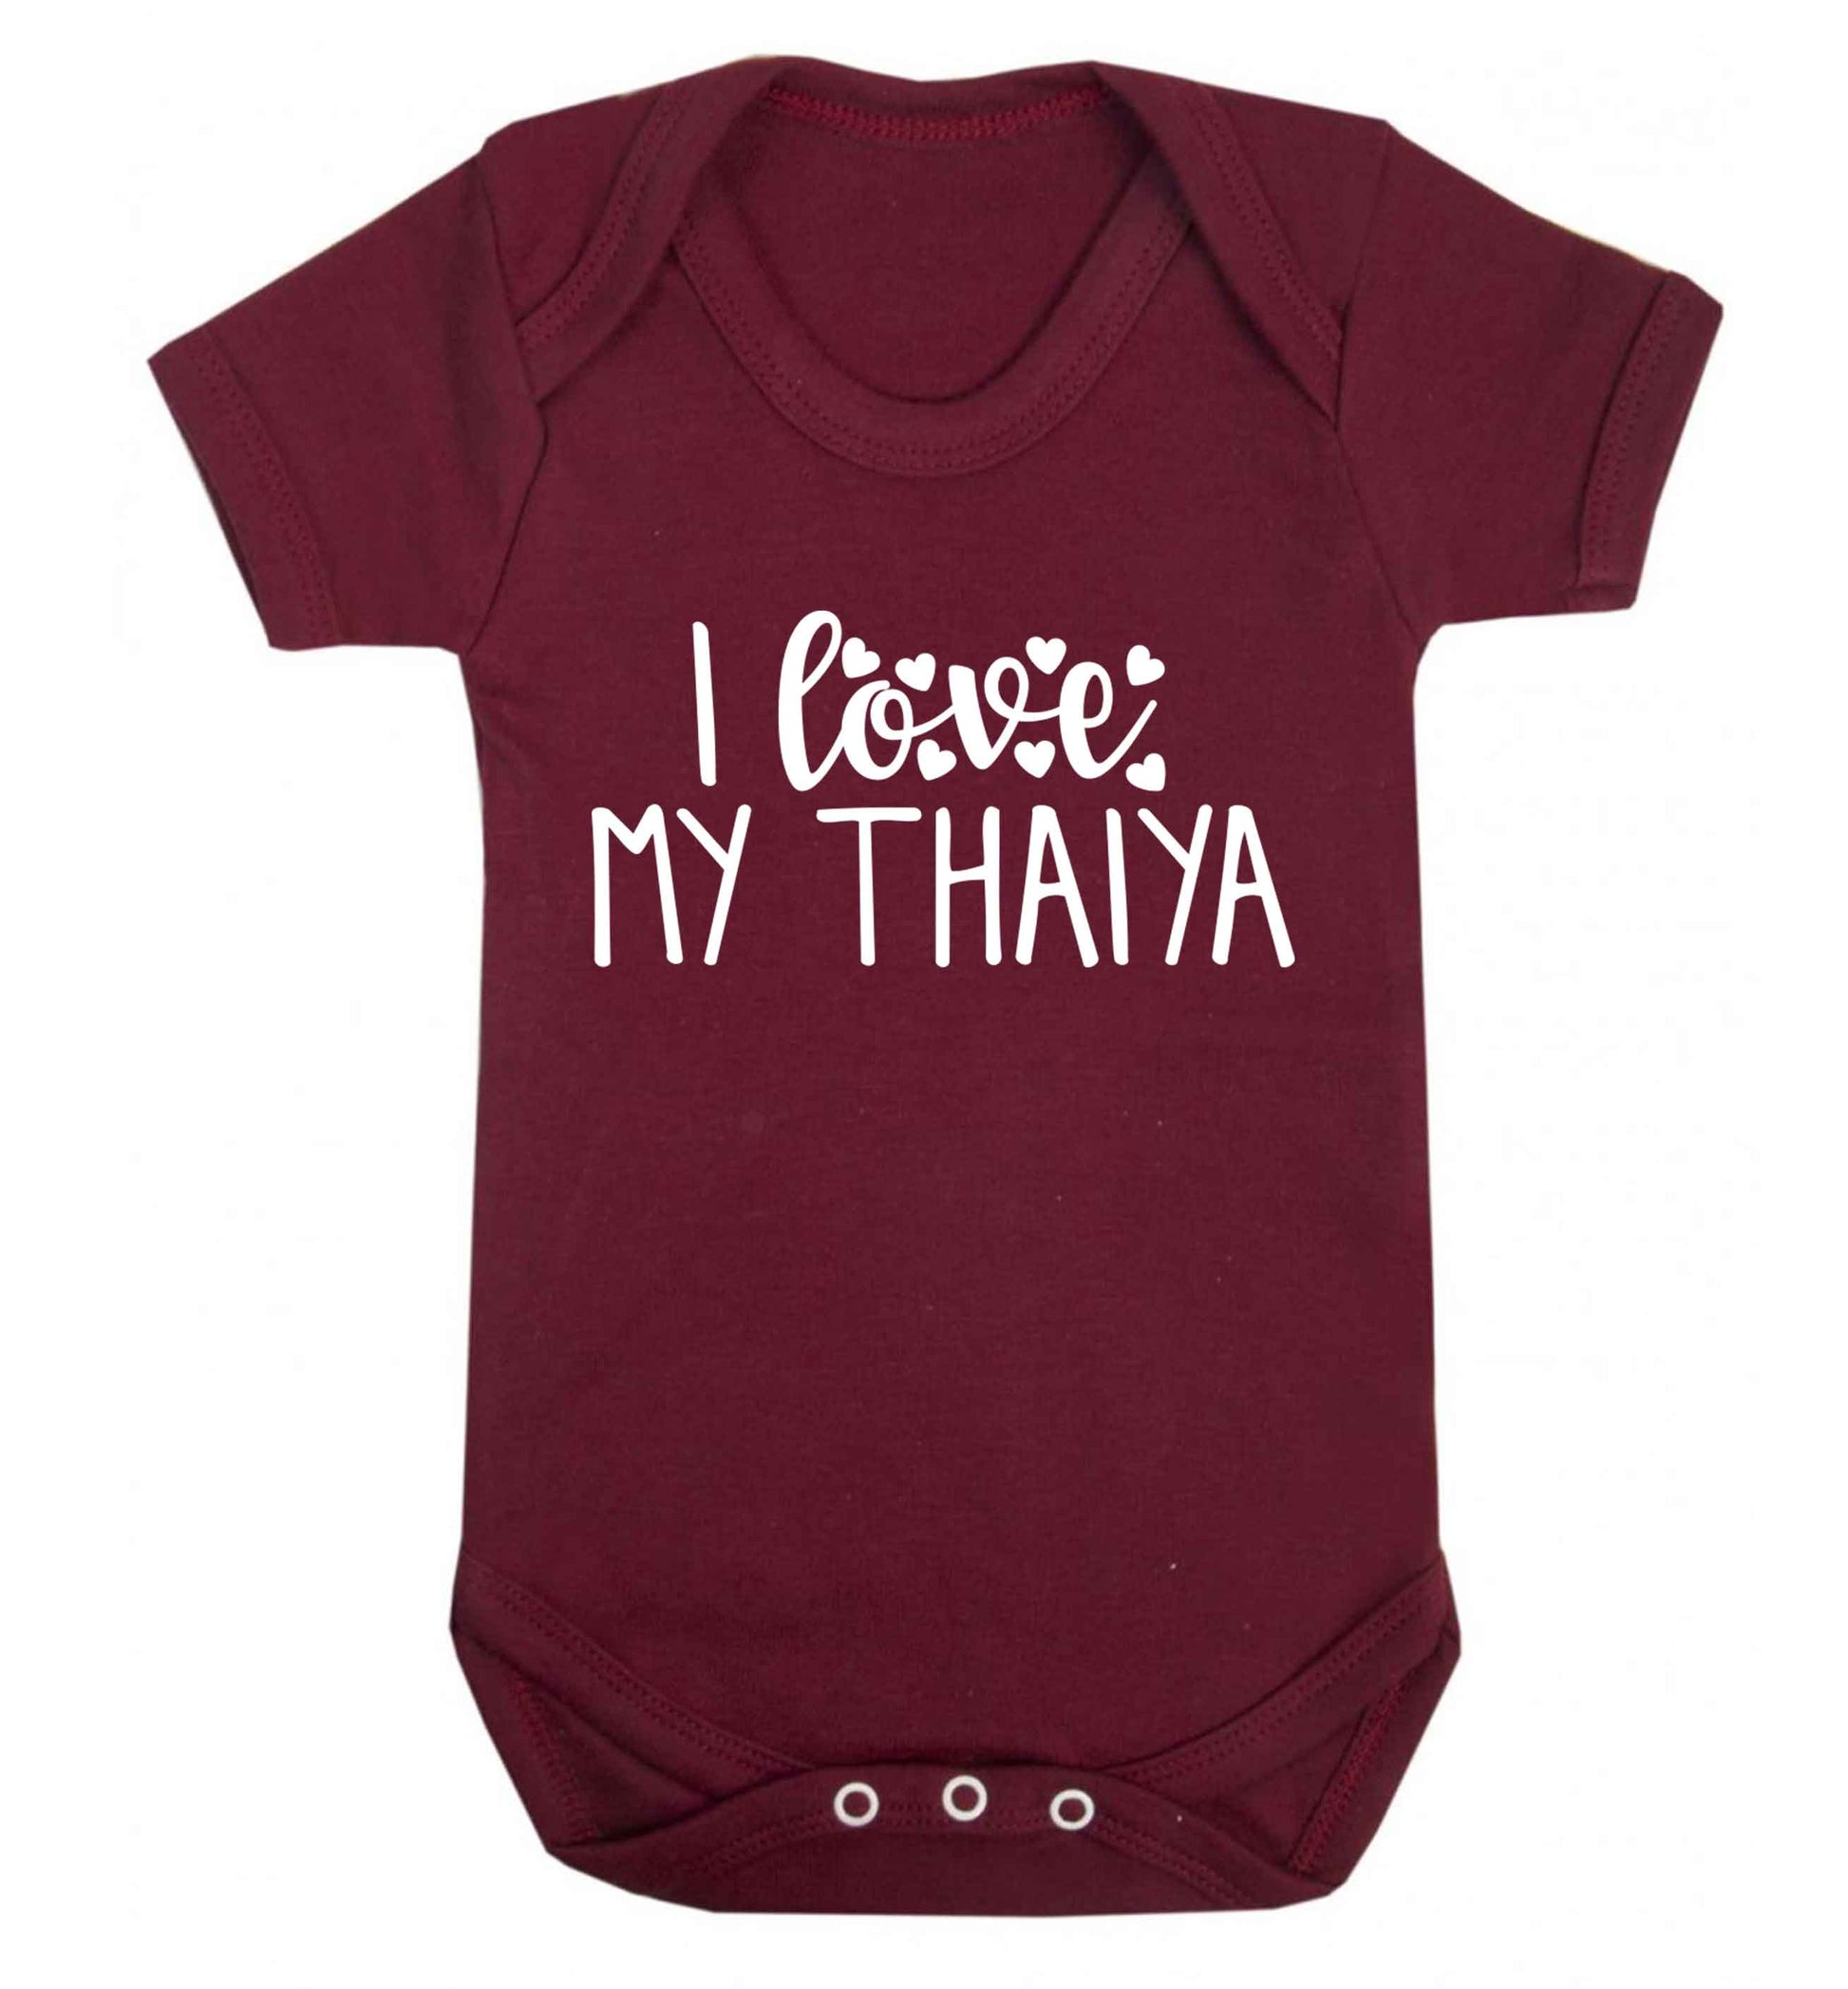 I love my thaiya Baby Vest maroon 18-24 months